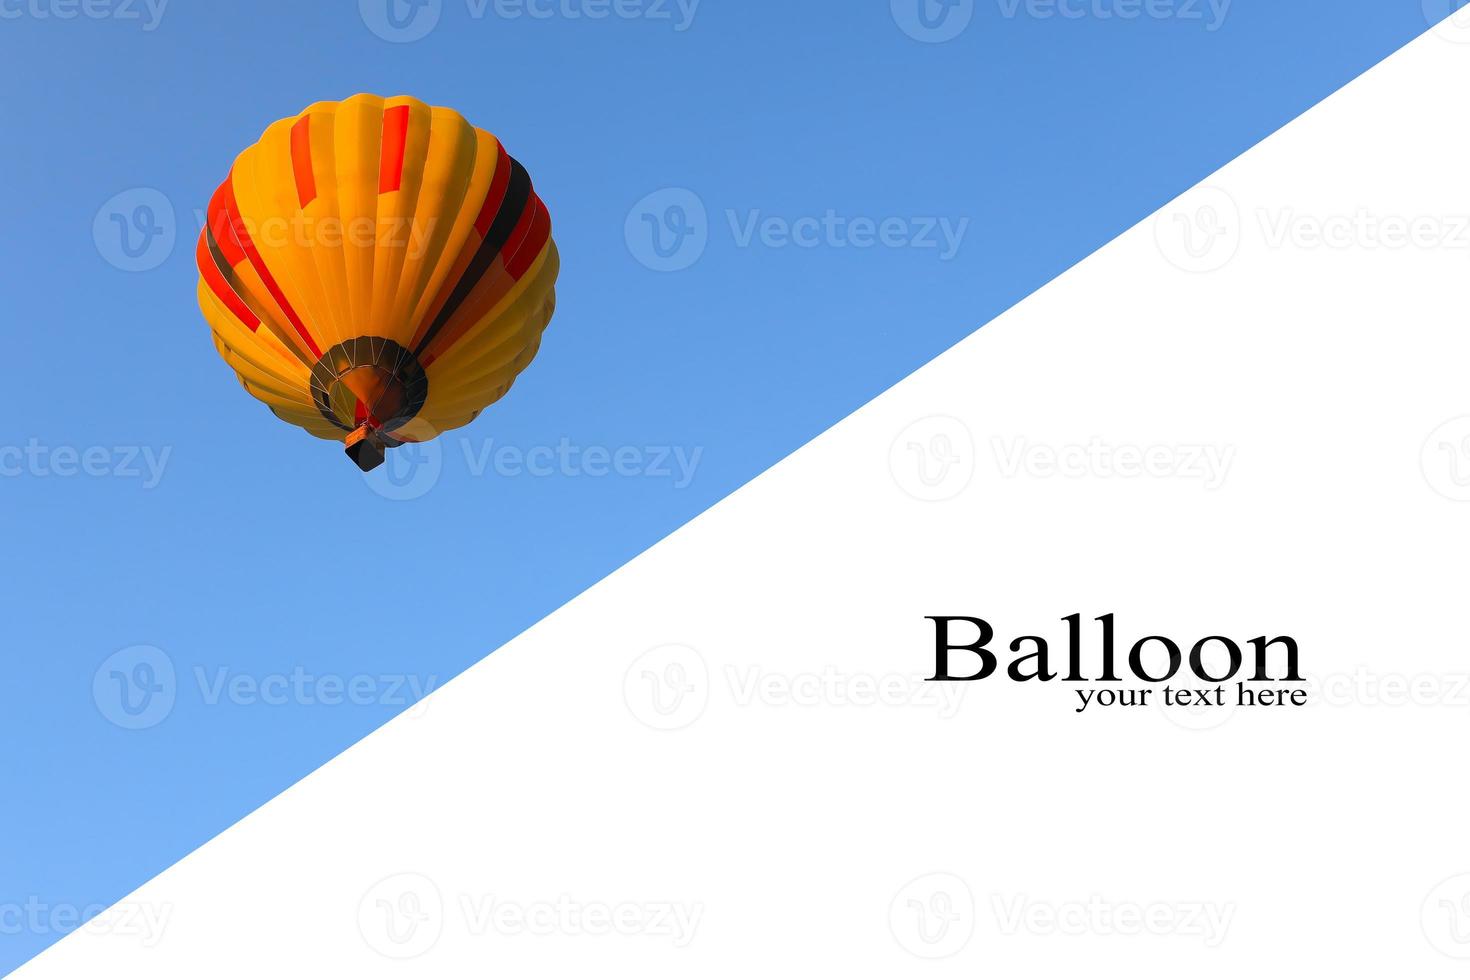 inspiratie of reisachtergrond, kleurrijke hete luchtballon in blauwe hemel. ballon met blauwe hemel achtergrond lancering op festival. plaats voor tekst foto